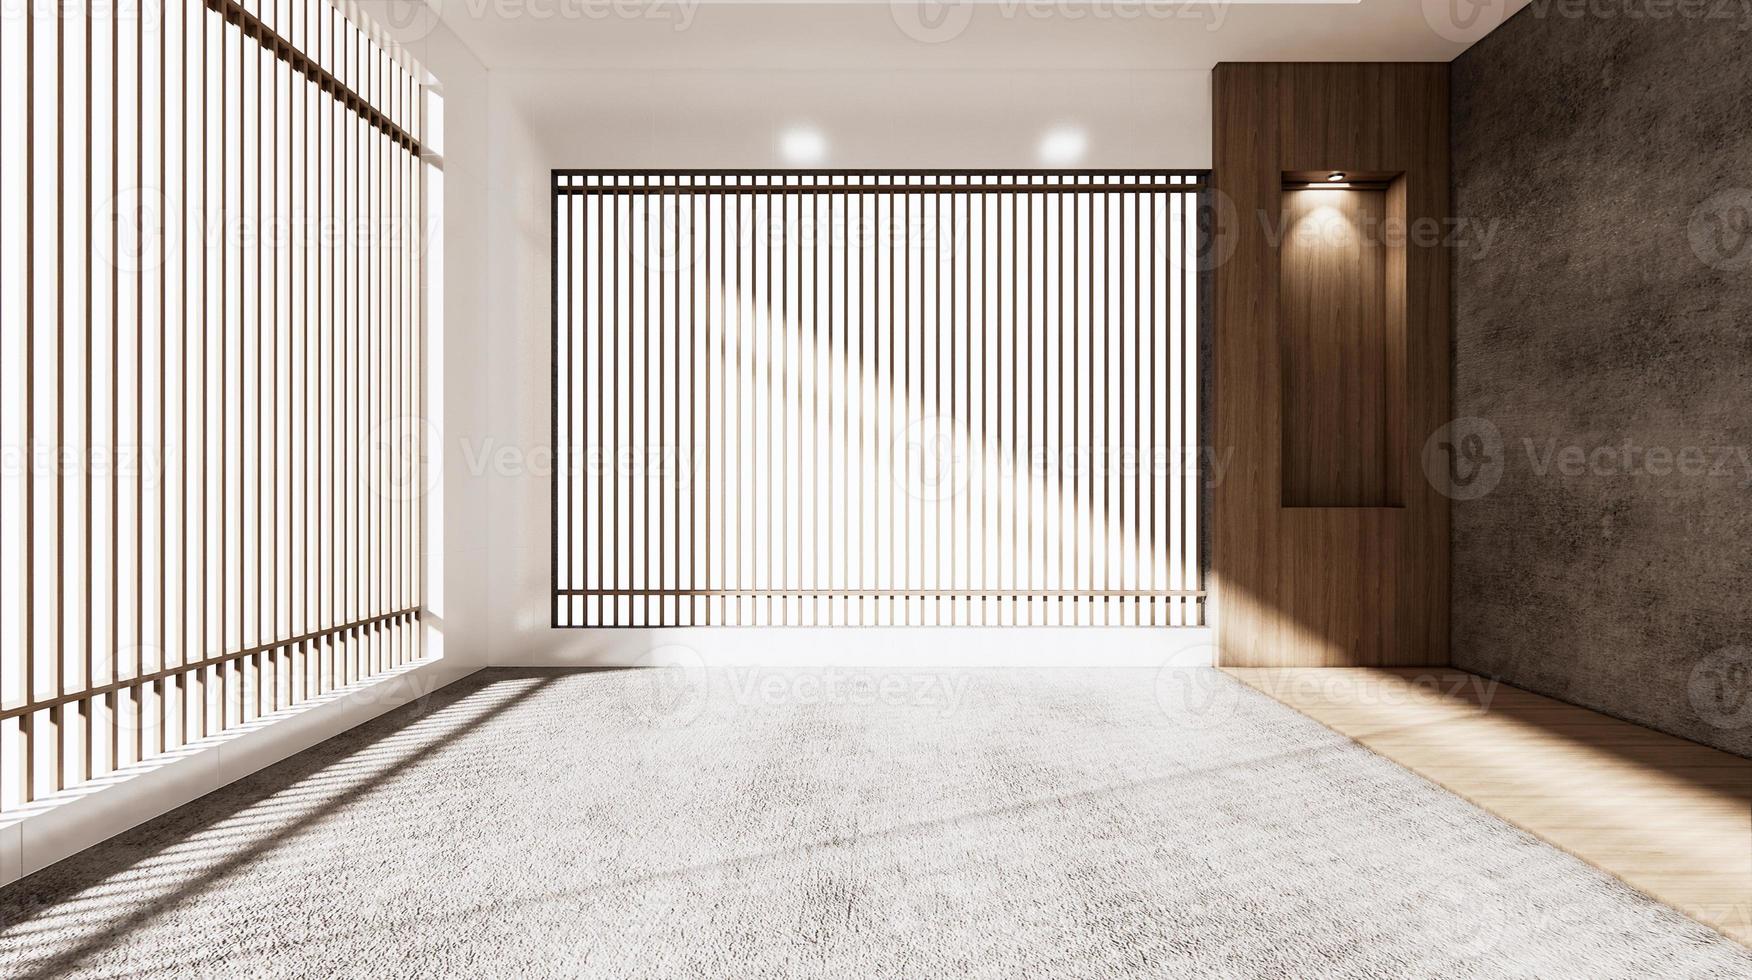 la salle vide de style japonais et la lampe vers le bas sur le mur de l'étagère design en bois.rendu 3d photo